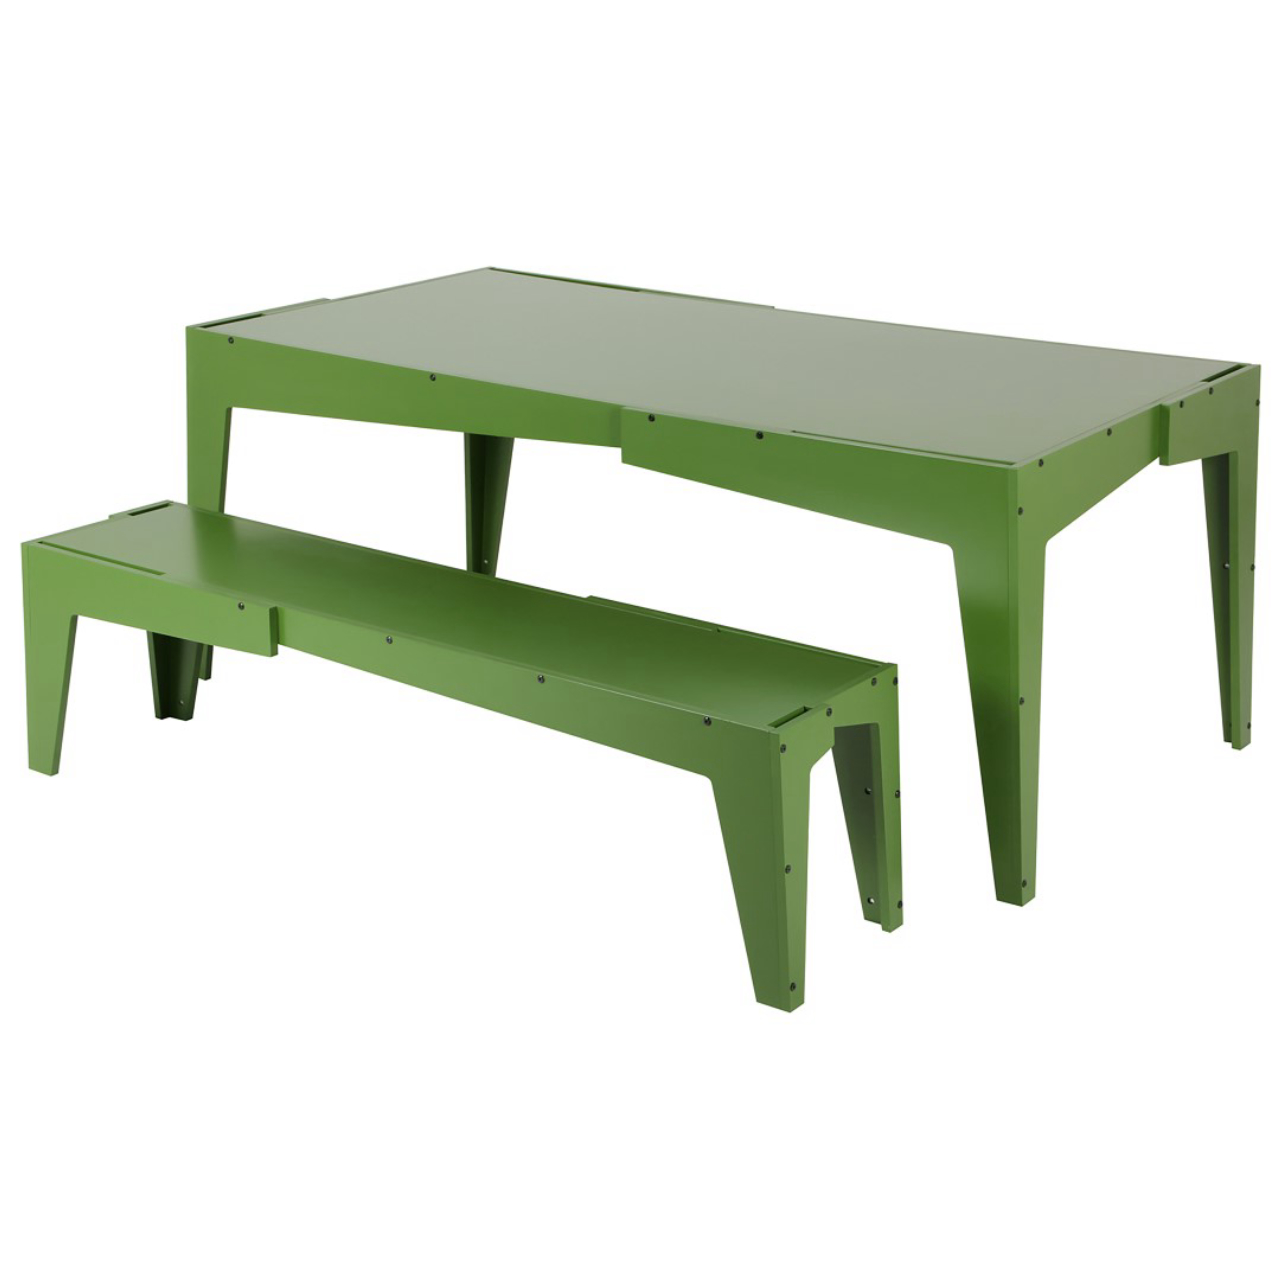 Mesa e banco da linha Assimétrica estão disponíveis nas cores verde e preto.<br>A mesa mede 196 x 97 cm e custa R$ 1.750. O banco para três lugares custa R$ 775.   